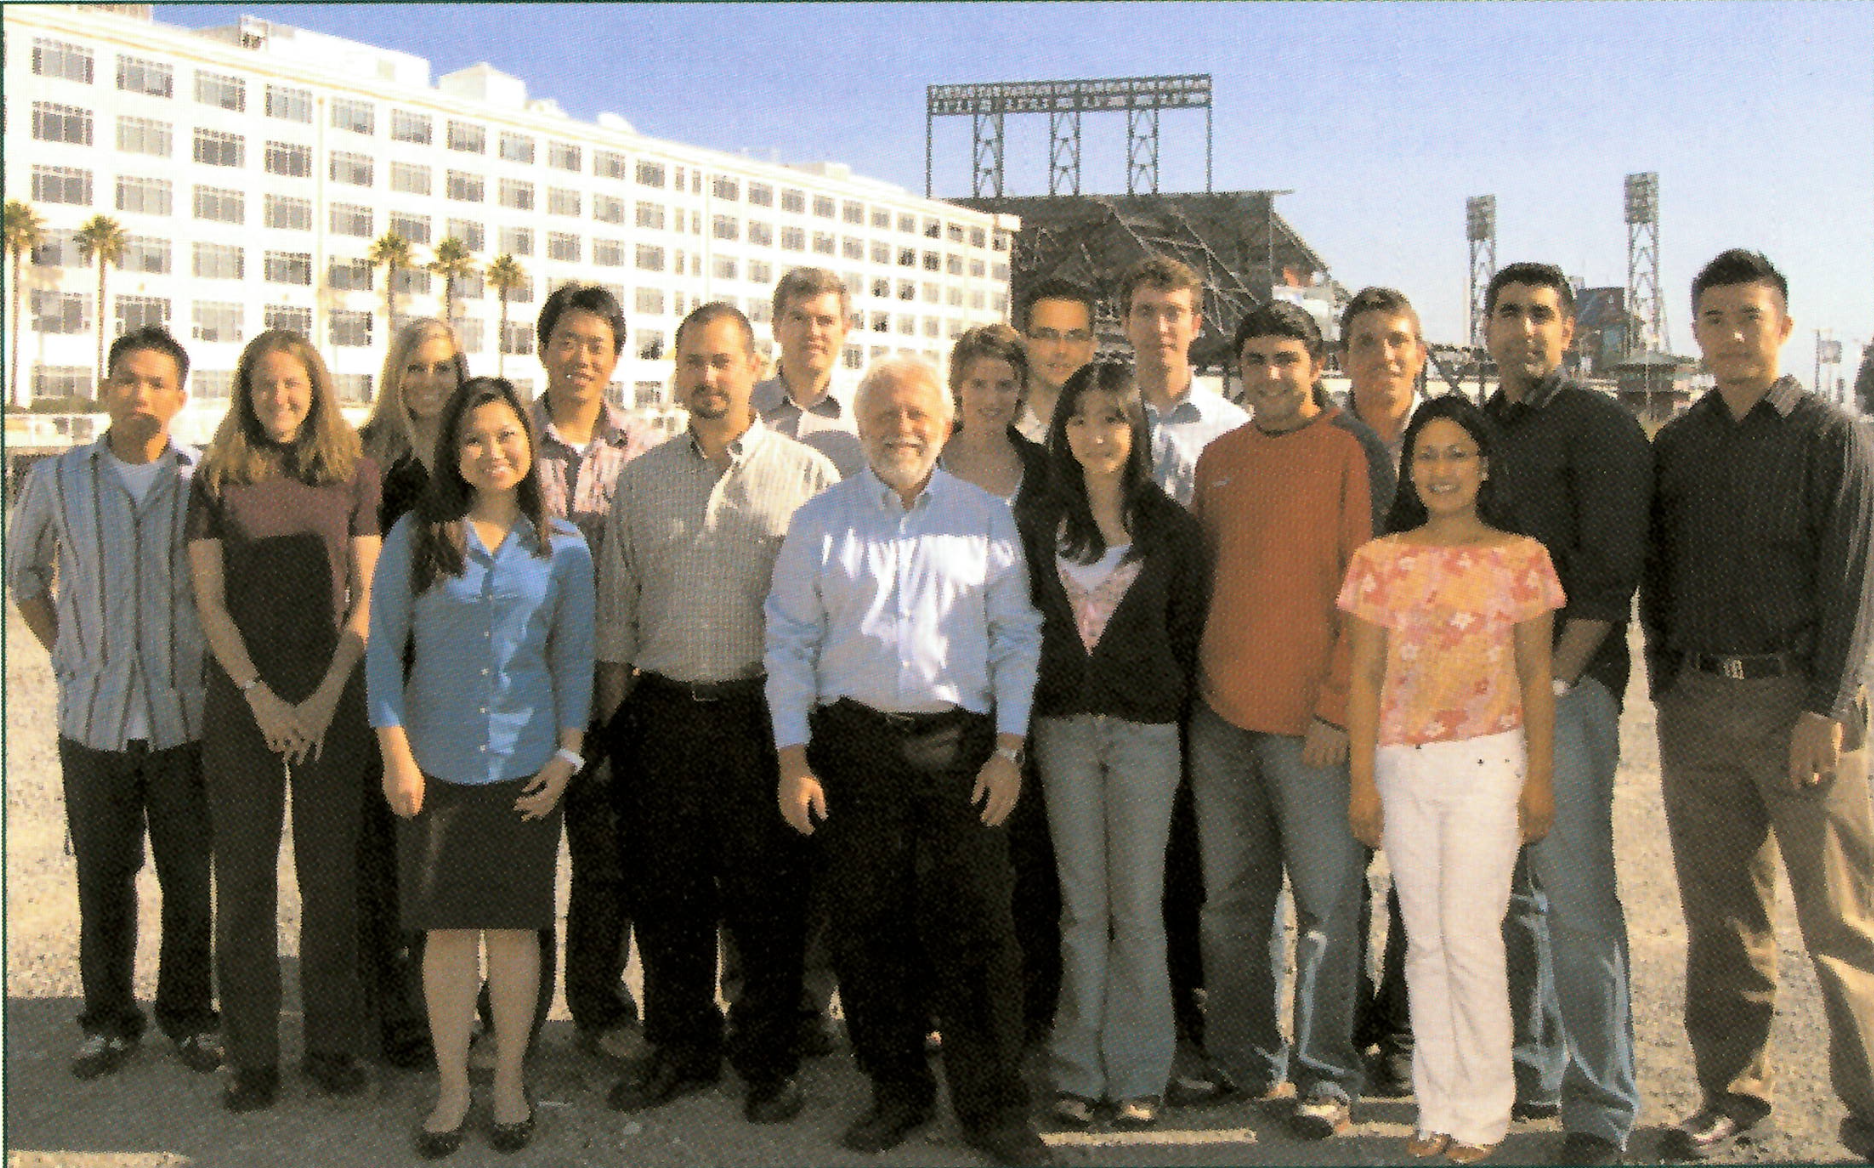 John Kurhanewicz, Robert Bok, and trainees, 2006